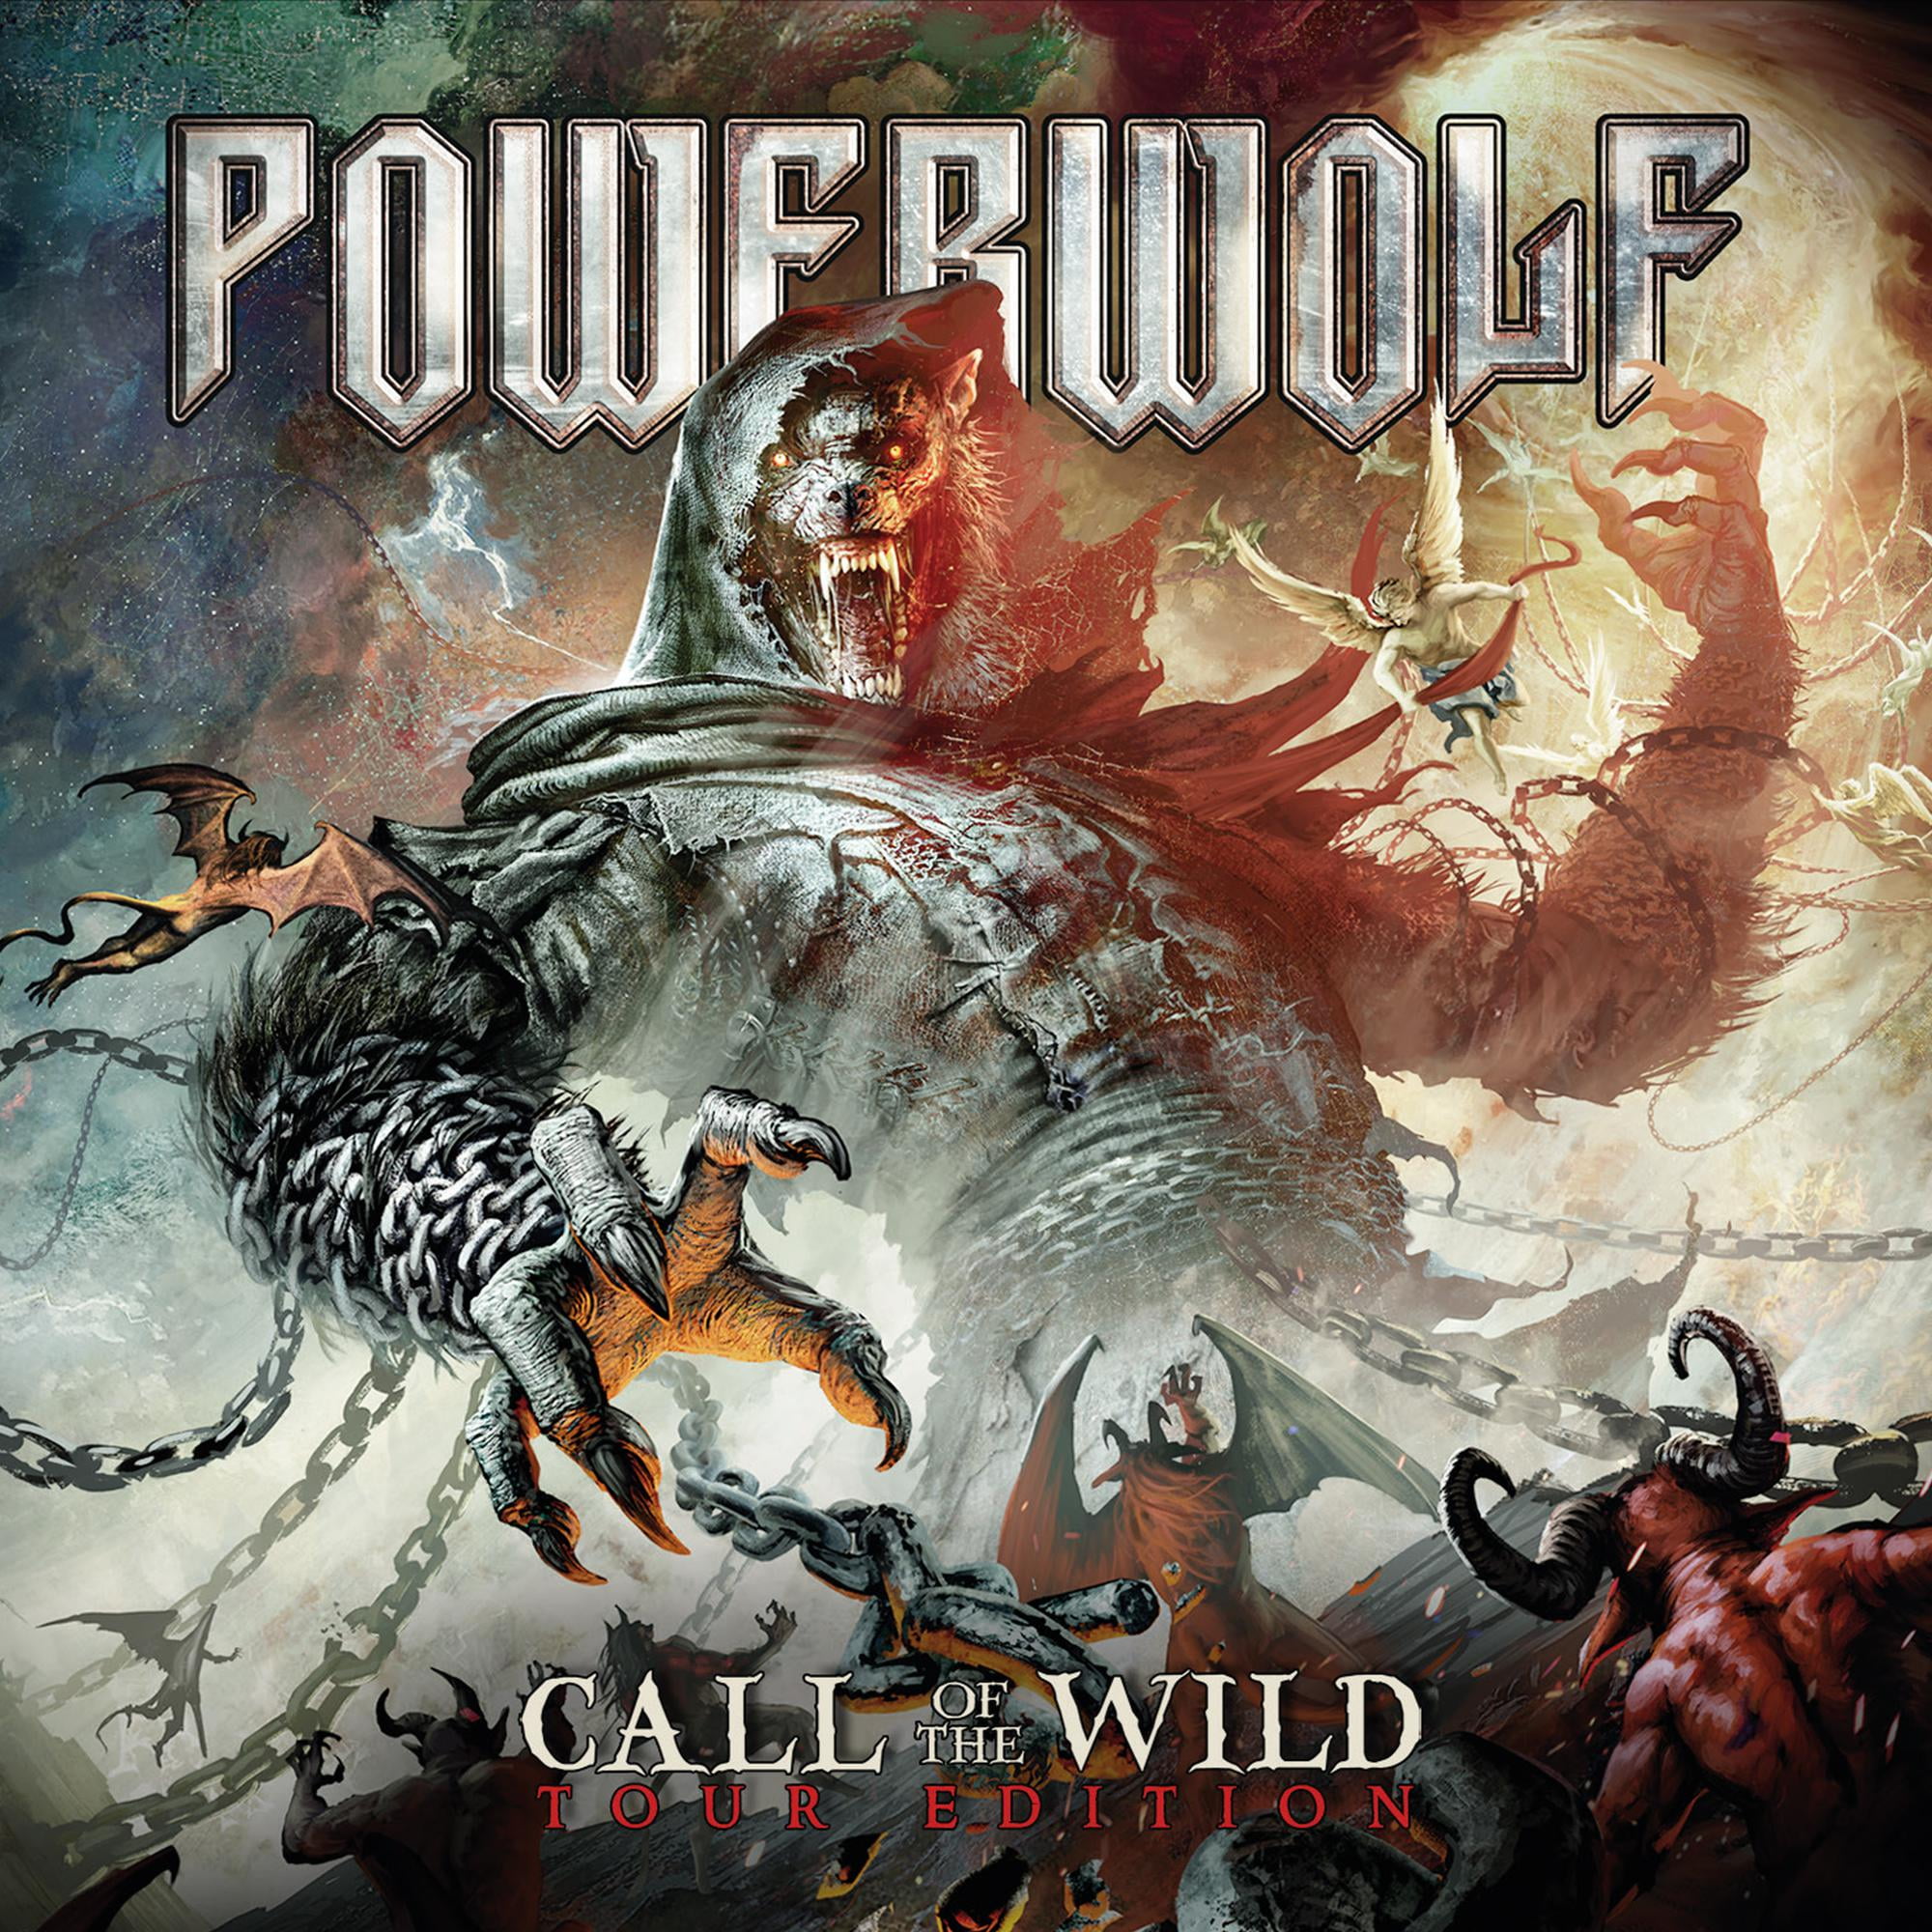 Powerwolf Music Videos 